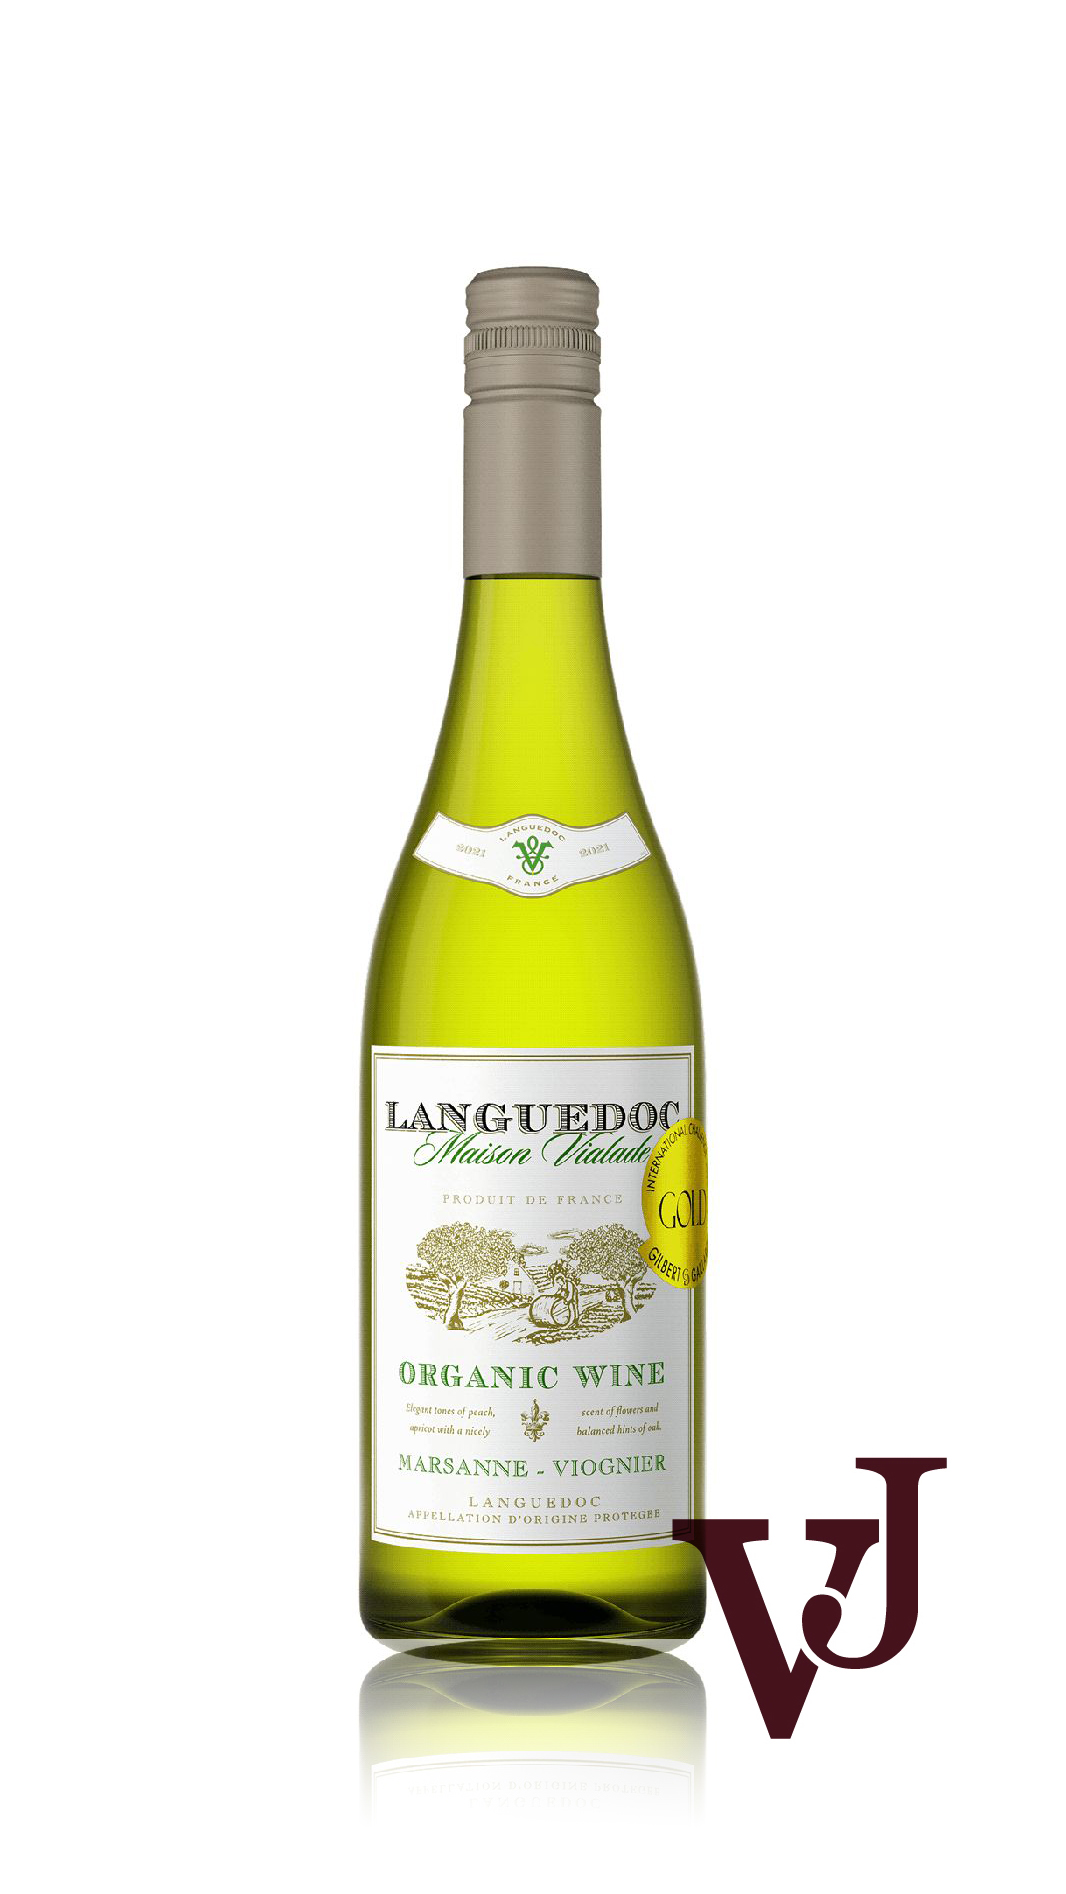 Vitt Vin - Maison Vialade Languedoc Organic 2021 artikel nummer 2005401 från producenten Claude Vialade från området Frankrike